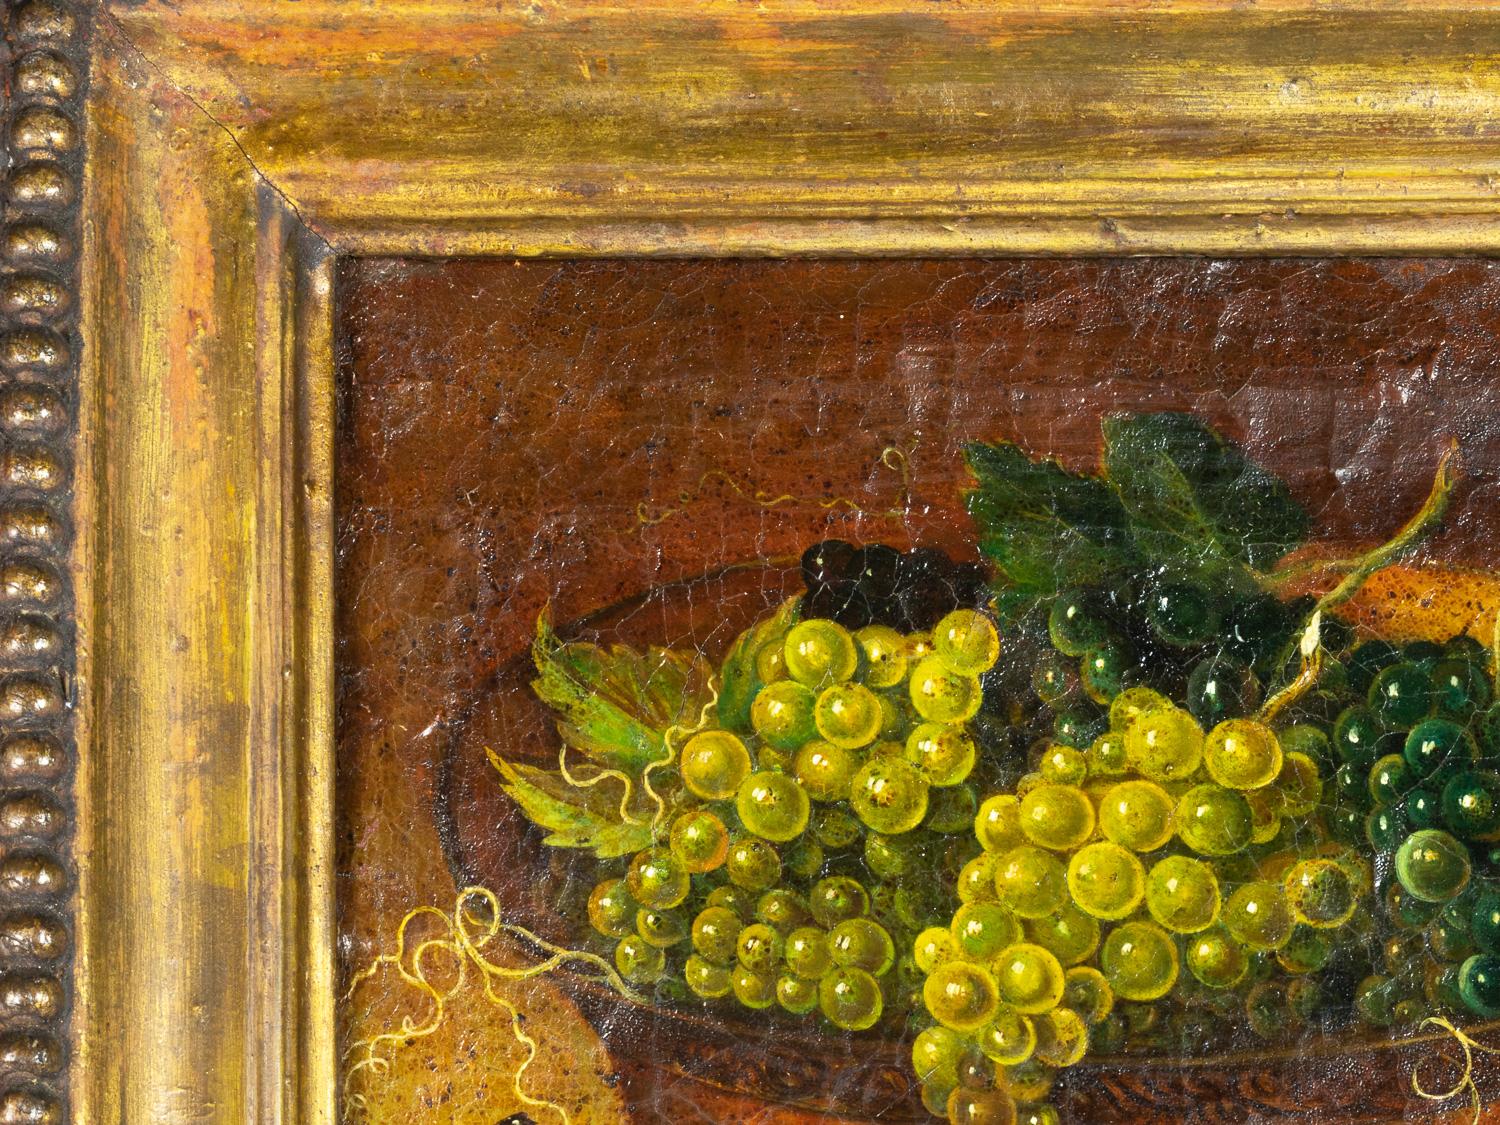 Auf diesem Stillleben aus dem 19. Jahrhundert steht eine große Schale mit Weintrauben im Mittelpunkt. Der Künstler ließ sich von dem malerischen provenzalischen Stil inspirieren und schuf eine fesselnde Szene.

Rahmen 52 x 45 cm
Leinwand 40 x 31 cm